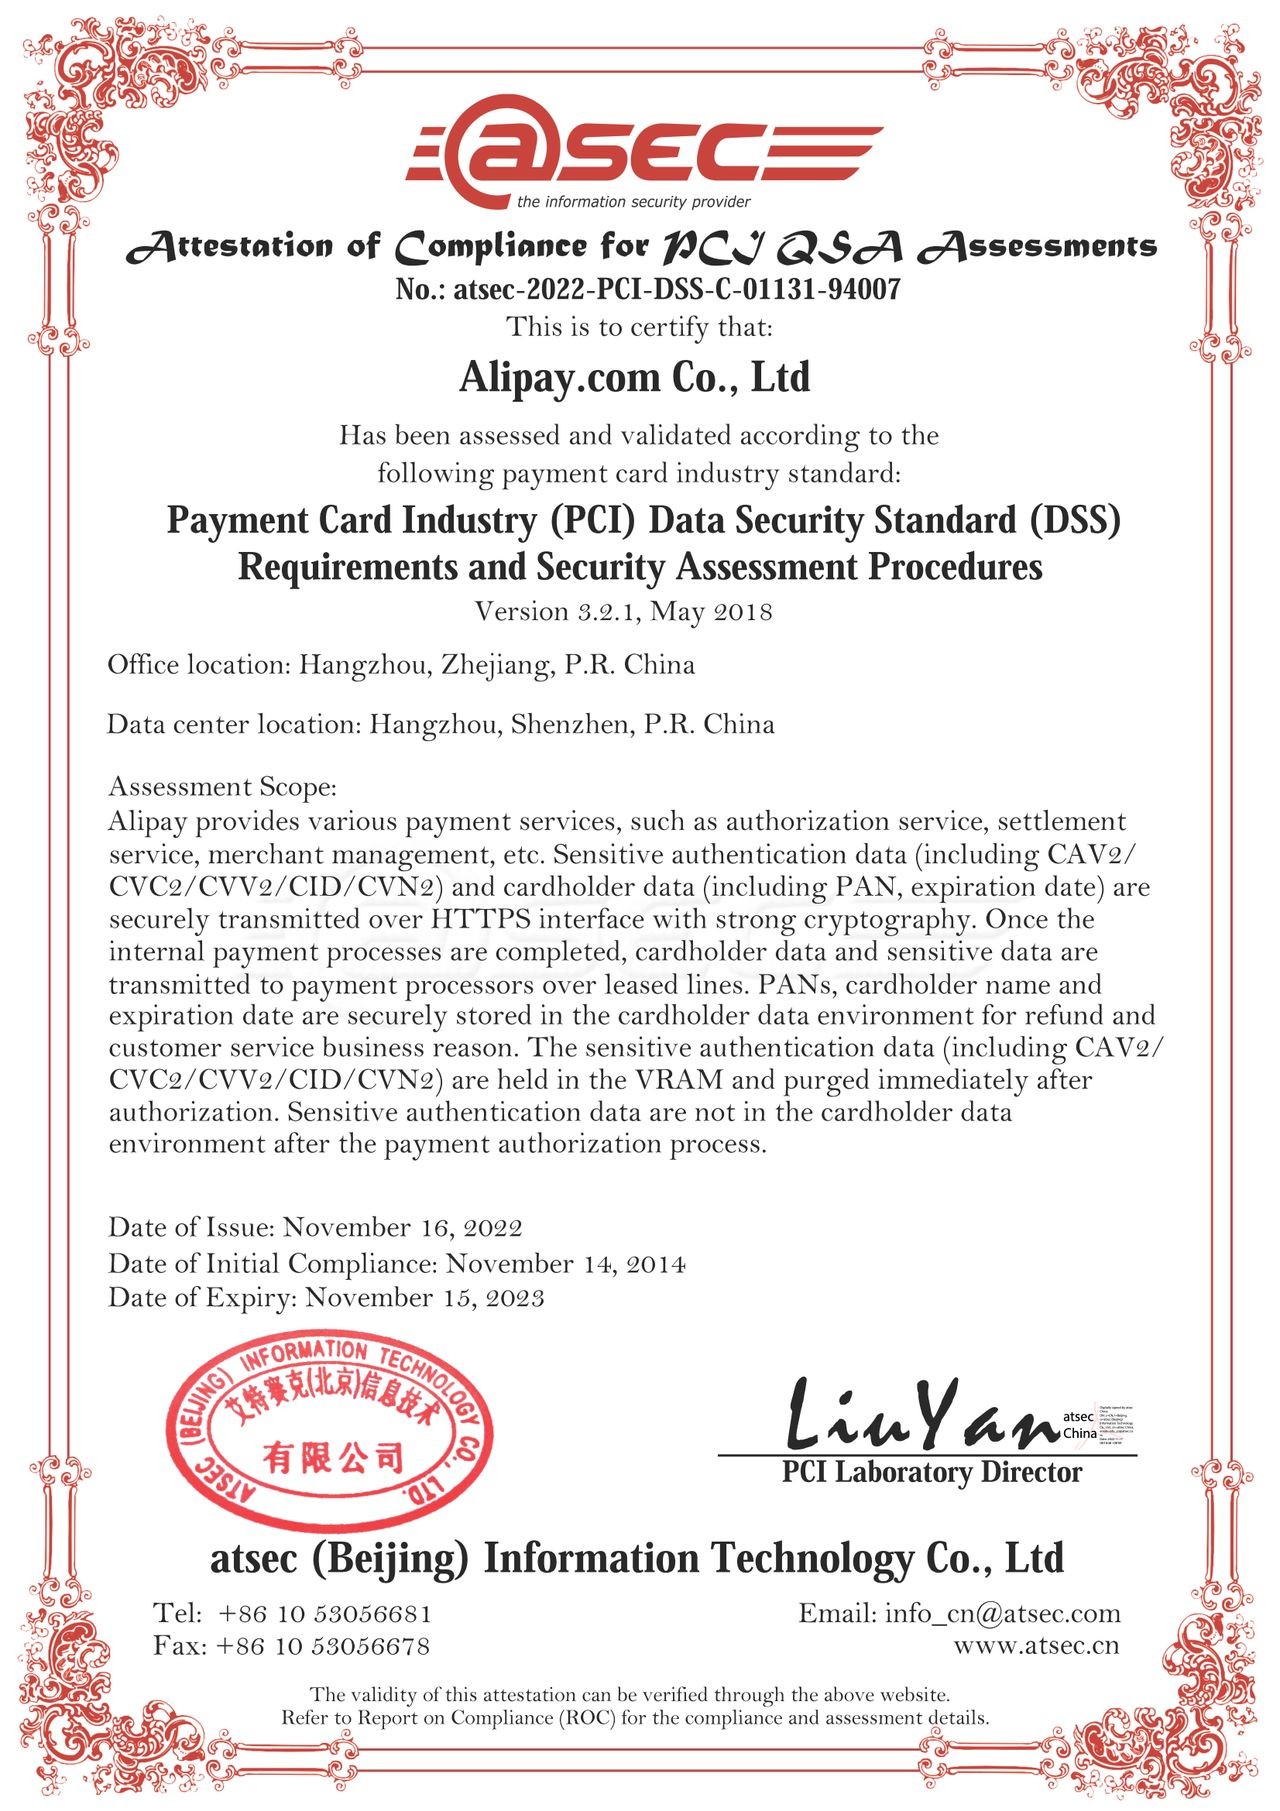  Alipay PCI Compliance Certificate